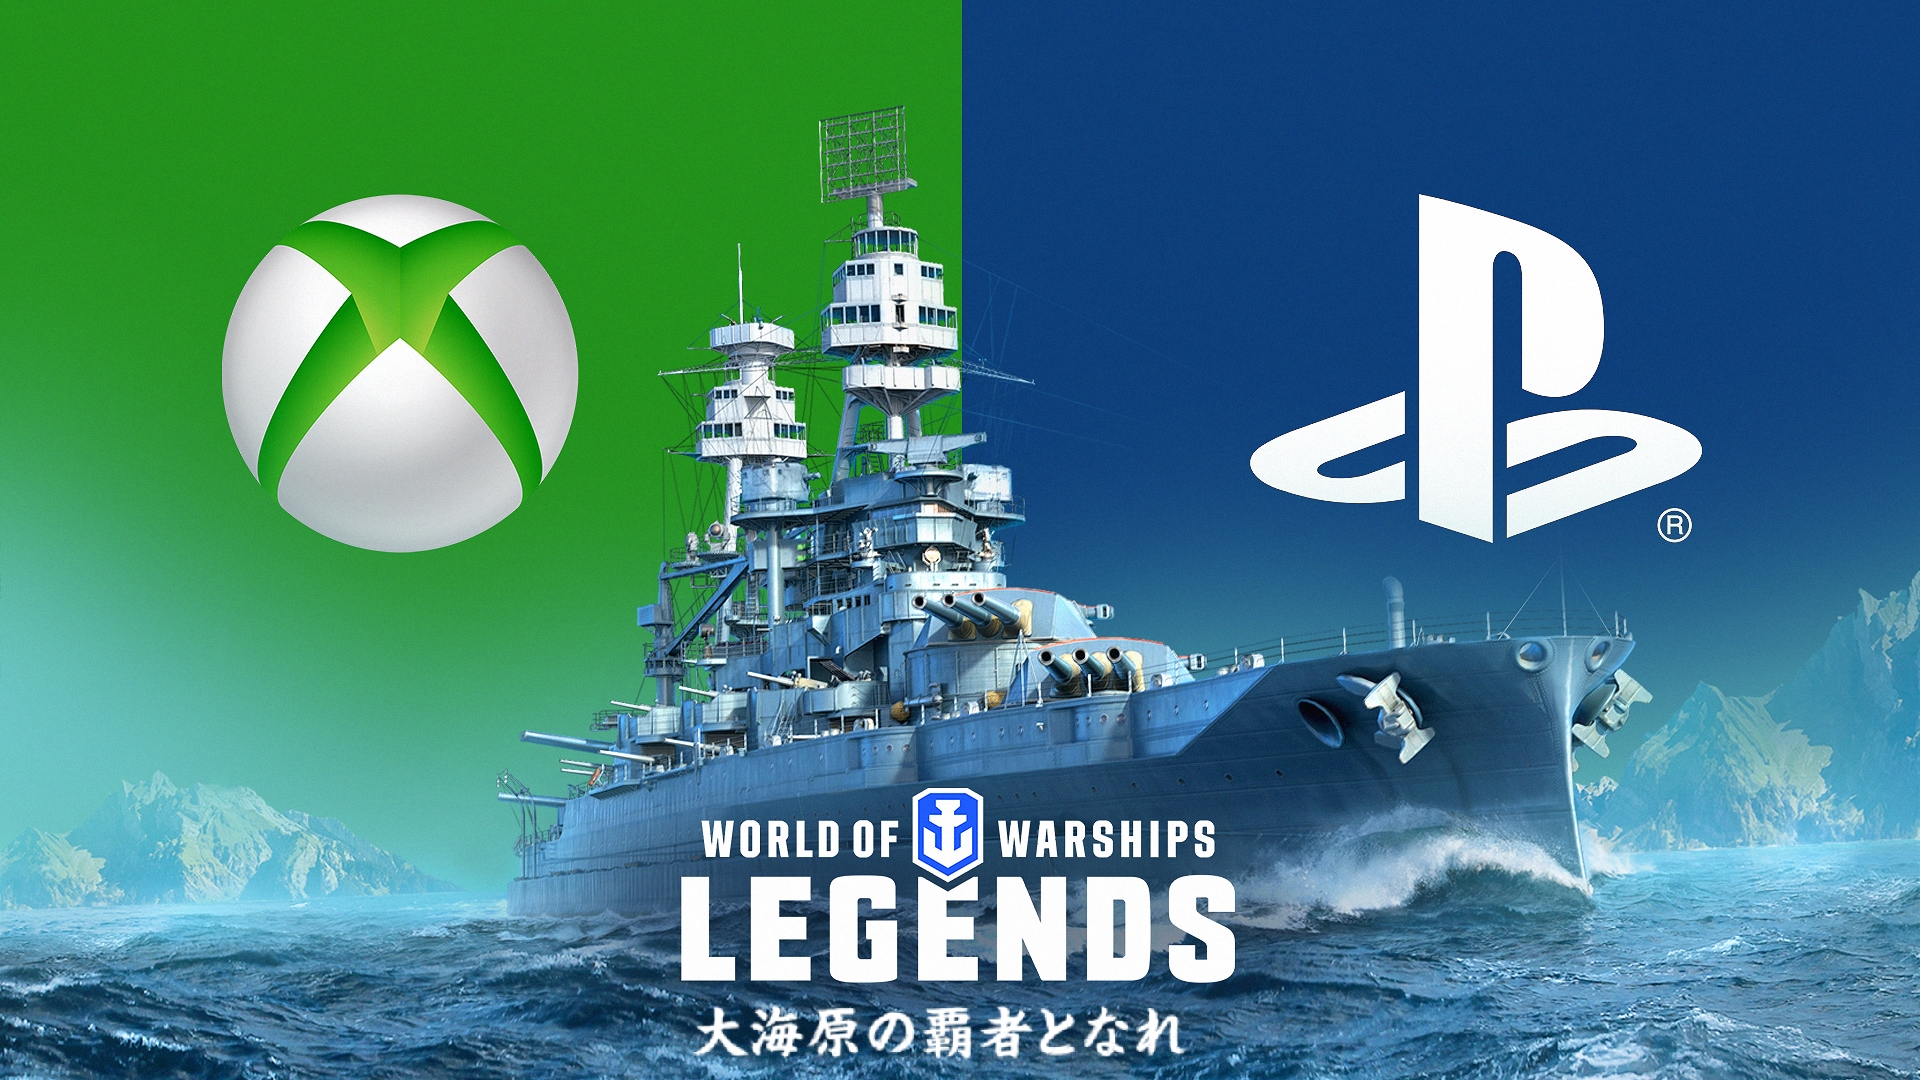 World Of Warships Legends のxbox One版が11月25日に配信開始 1 3アップデートで新コンテンツ ランク戦 とブラック艦艇が登場